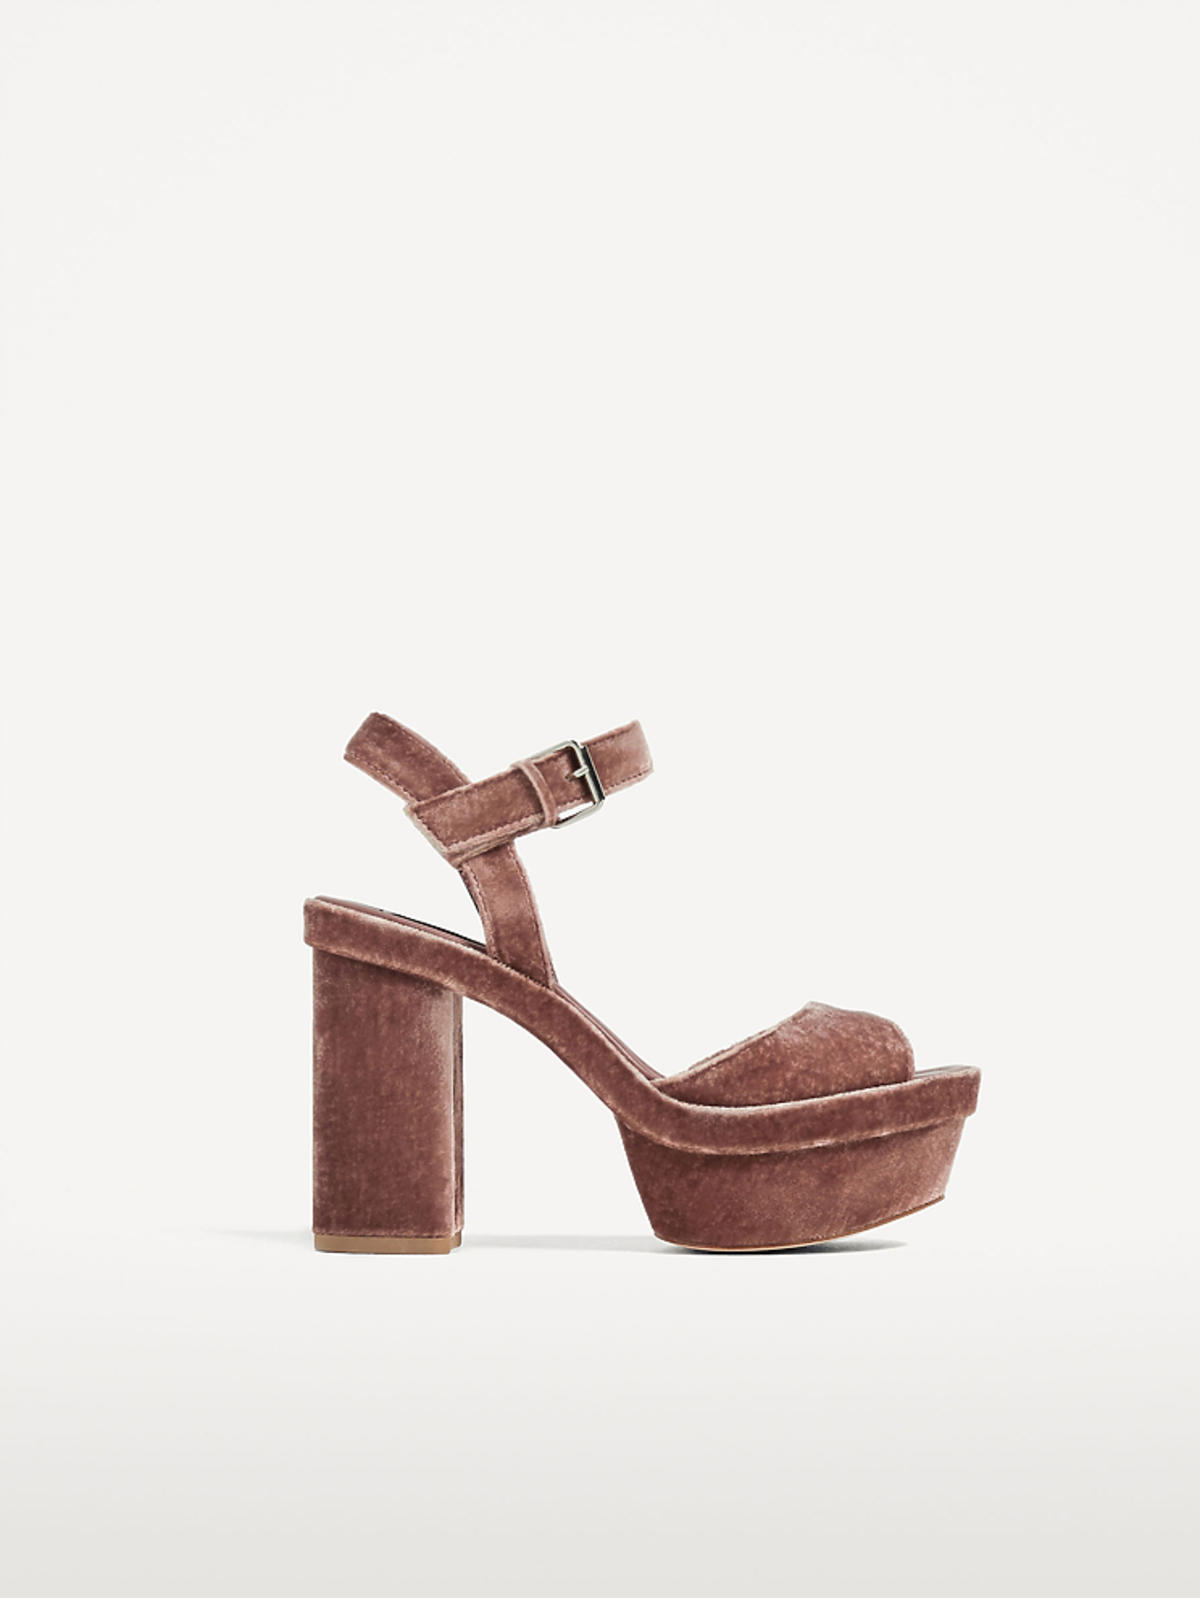 Aksamitne sandały na platformie Zara, 239 zł